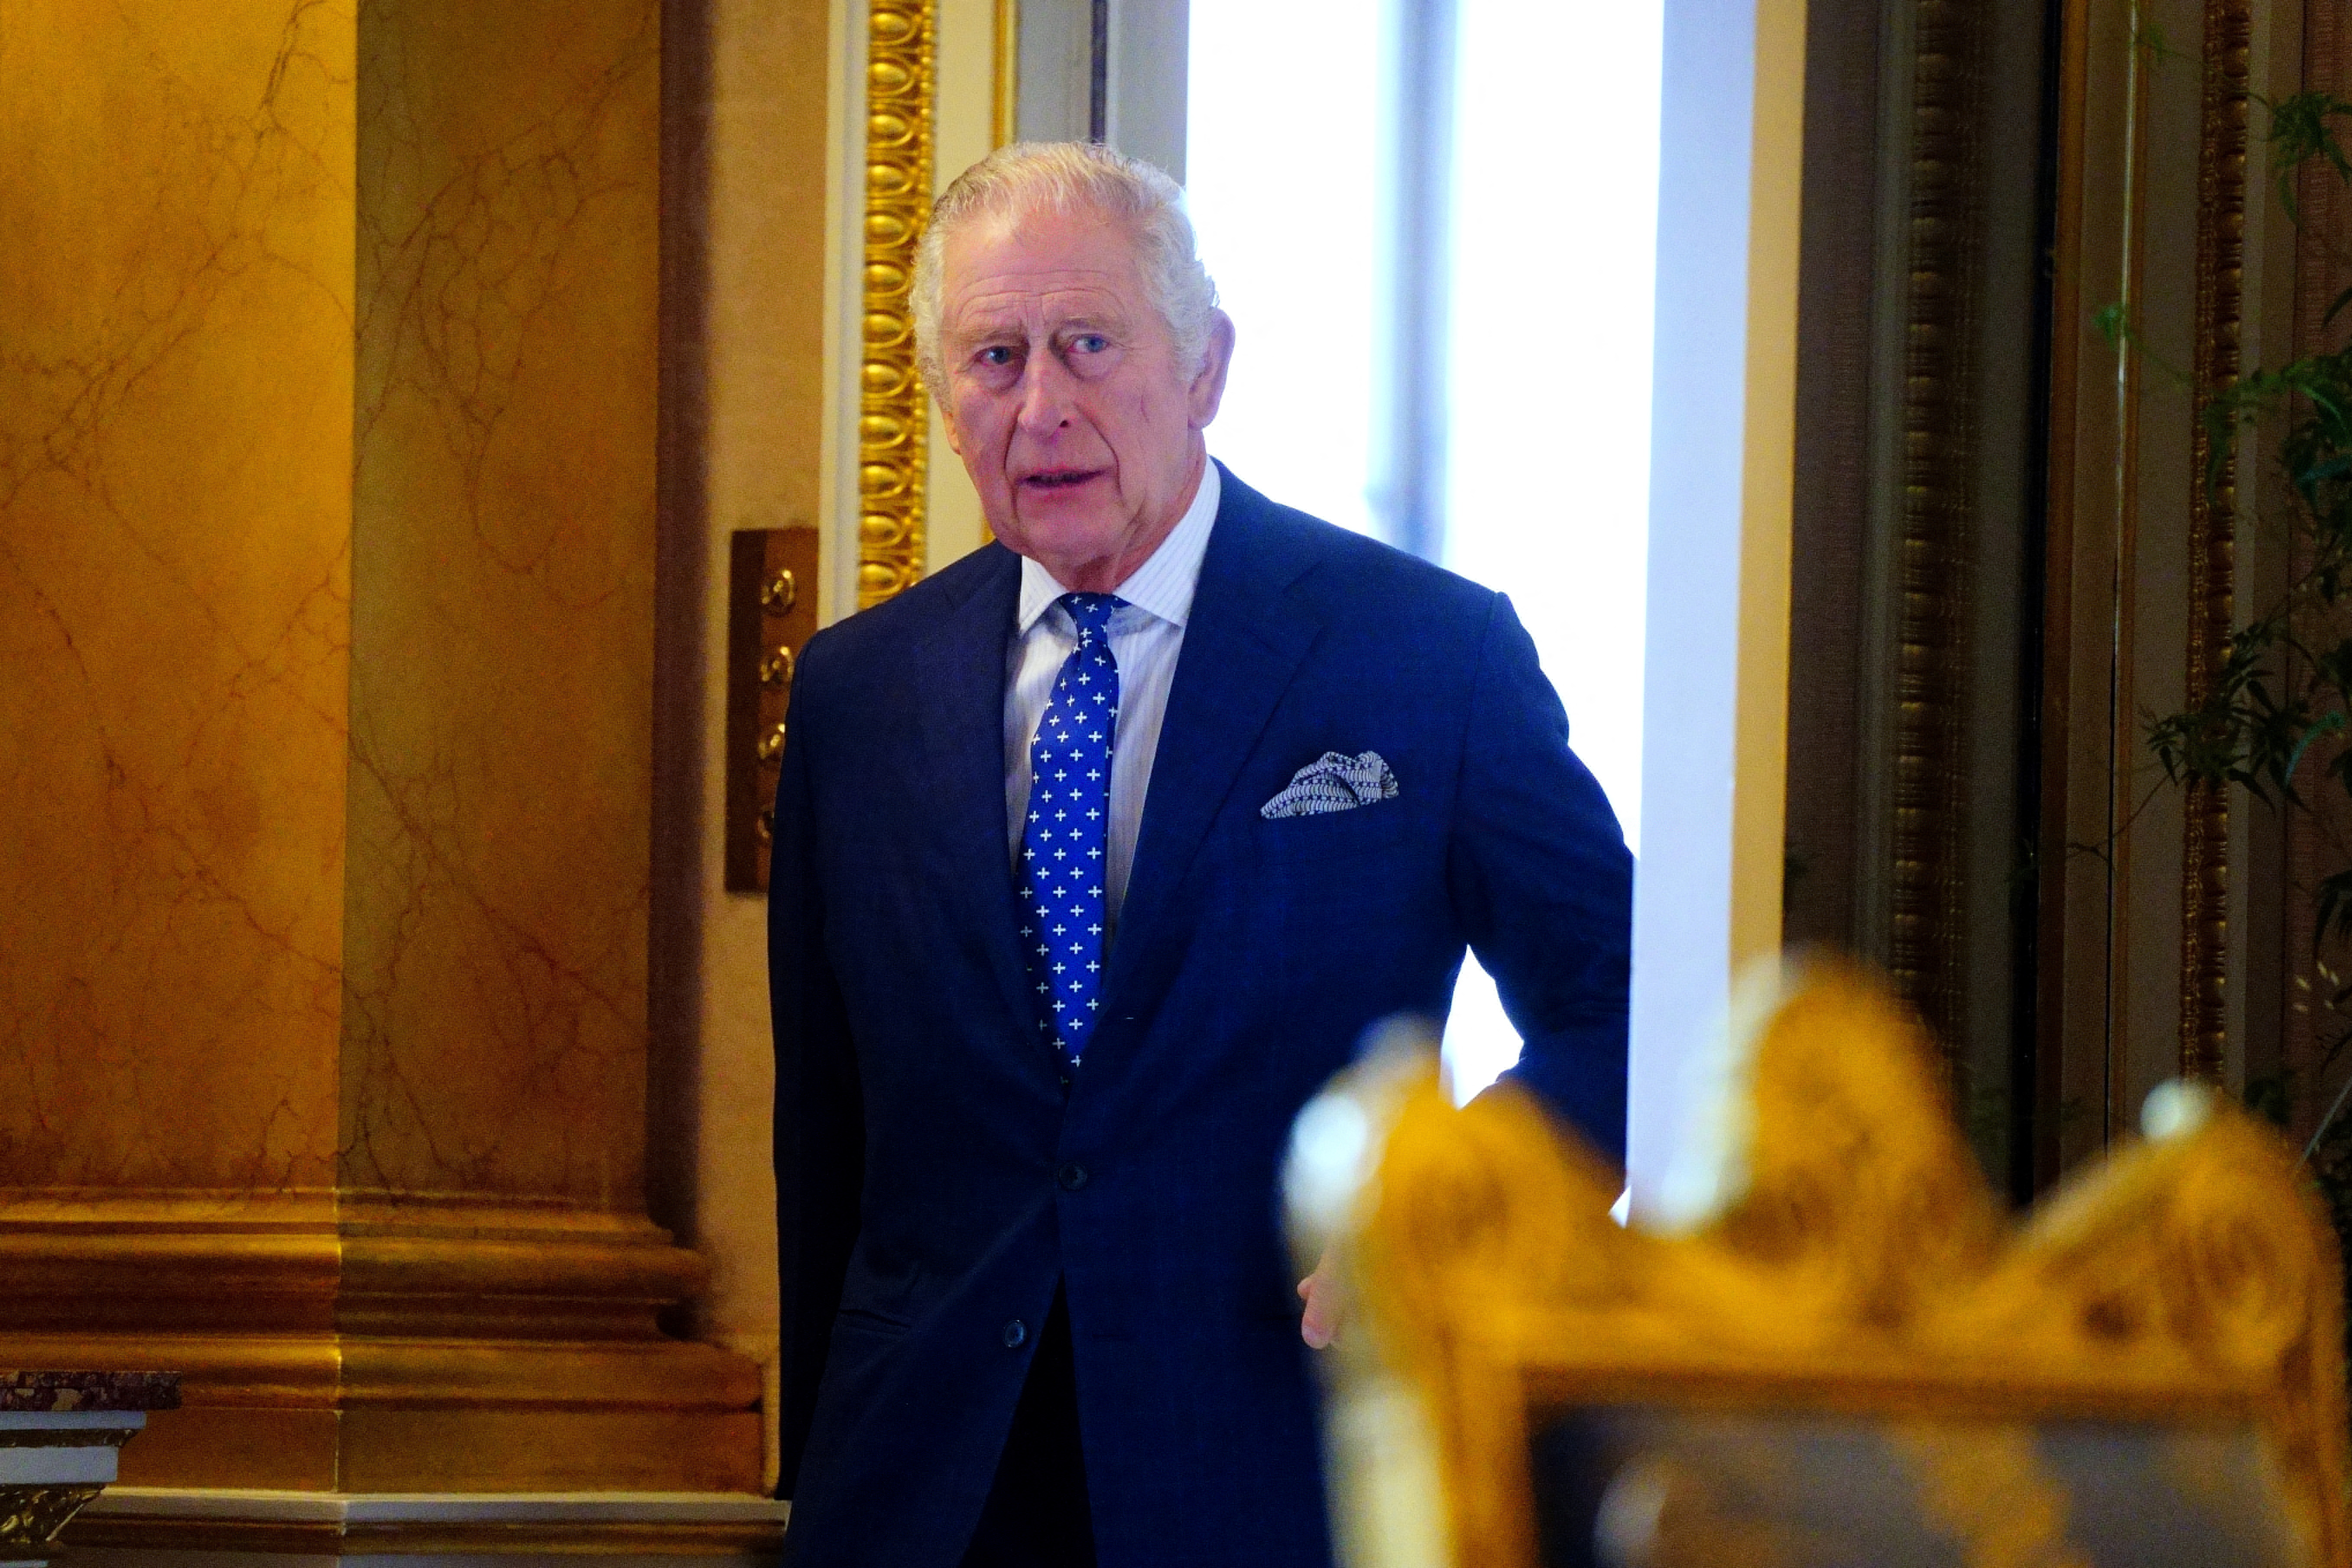 Por la tarde, Zelensky será recibido por el rey Carlos III en el Palacio de Buckingham, anunció la casa real. (Victoria Jones/REUTERS)